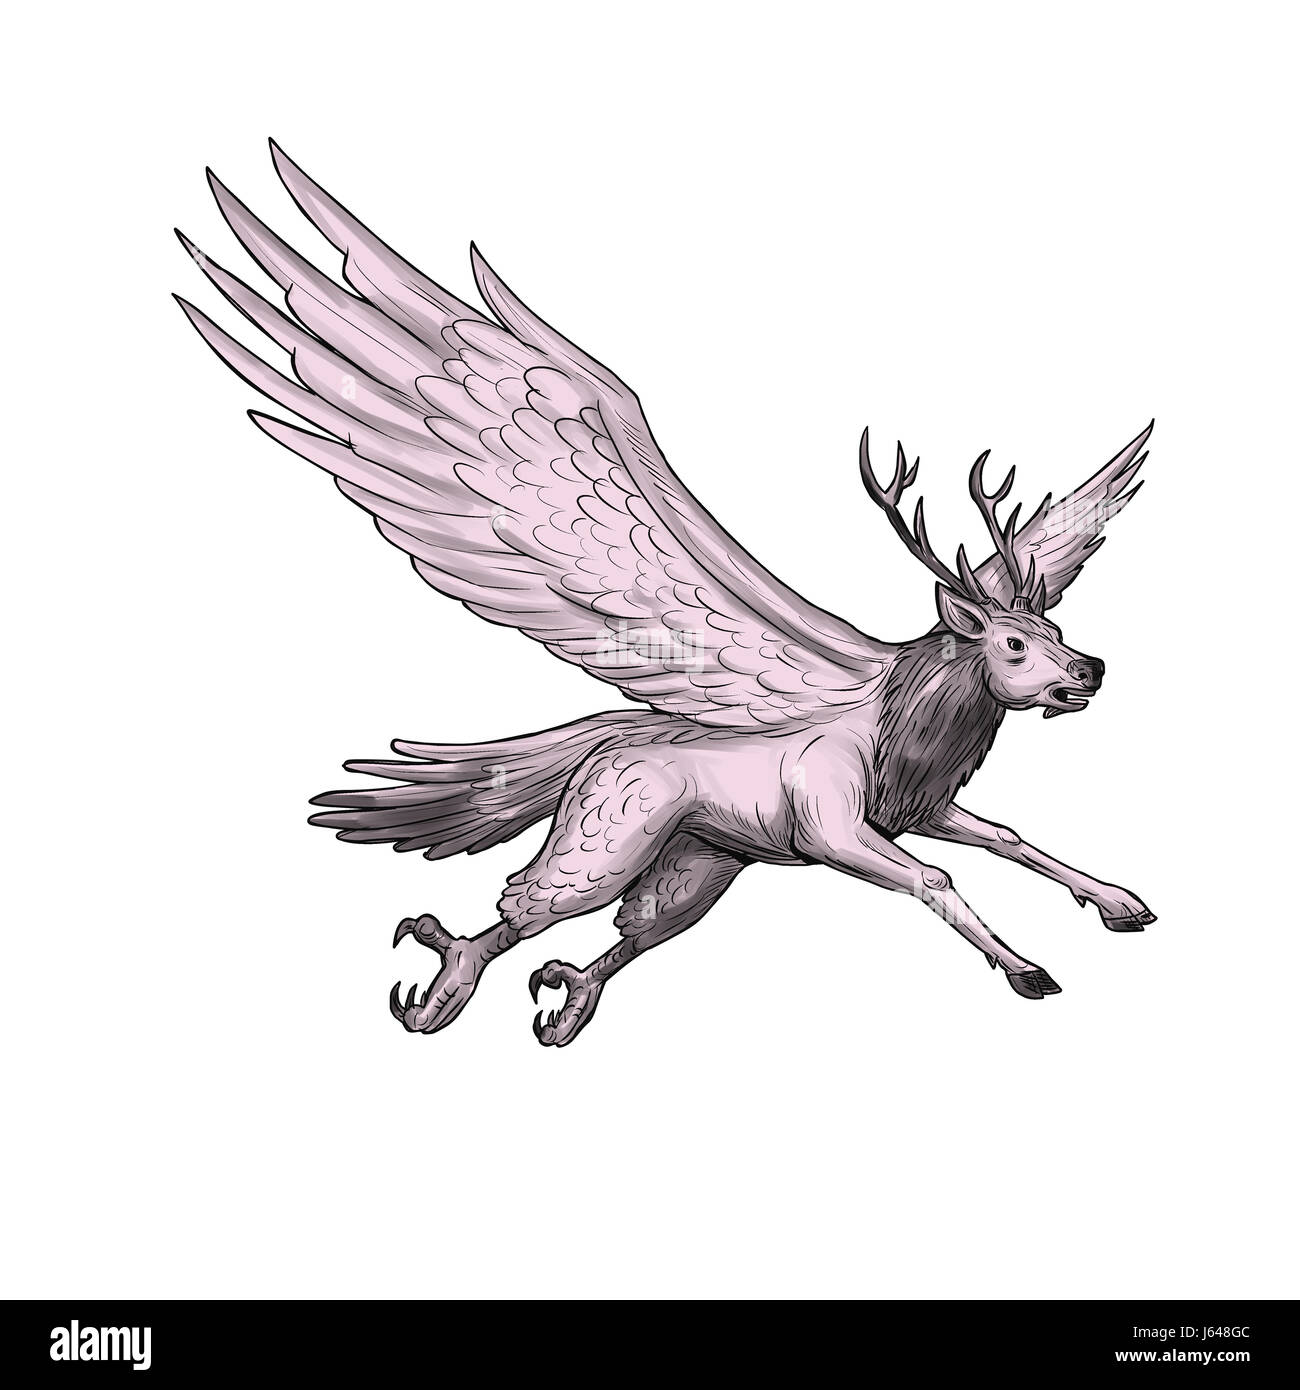 Lo stile di tatuaggio illustrazione di un Peryton, medievale europea mitica creatura con testa, zampe anteriori e corna di un full-cresciute stag con ali prugna Foto Stock